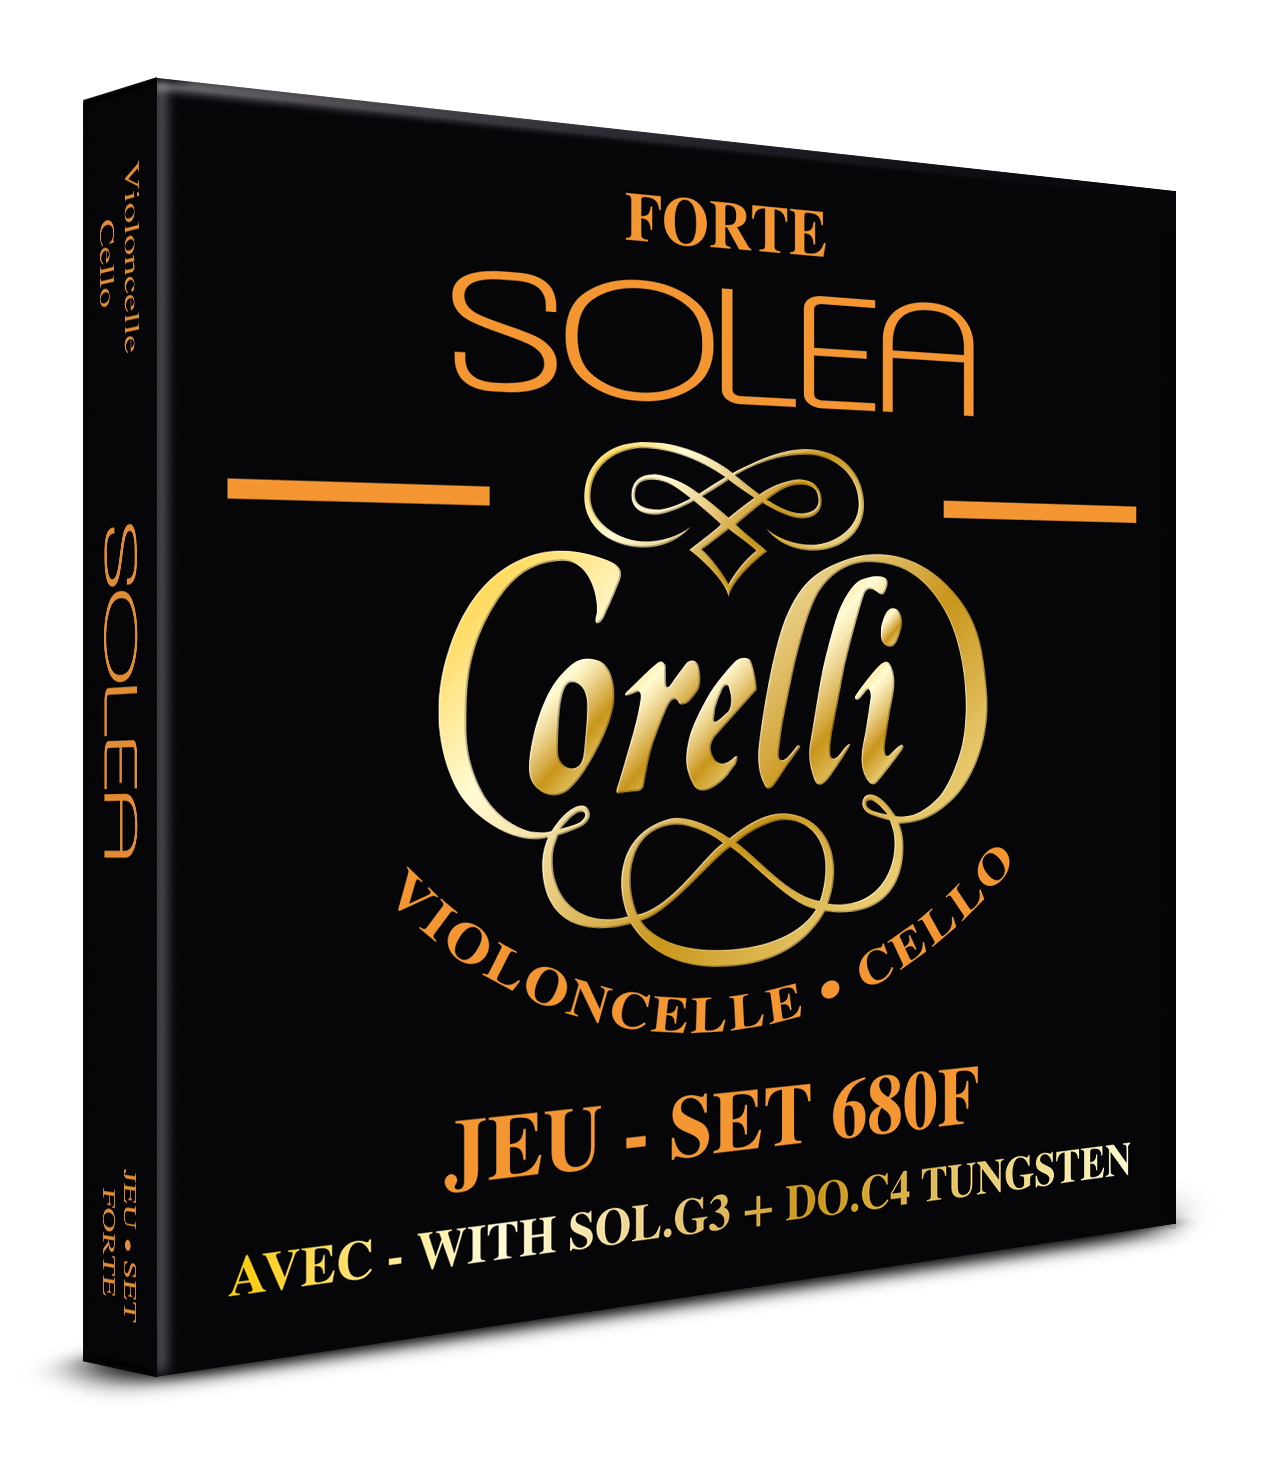 Corelli Solea 680f